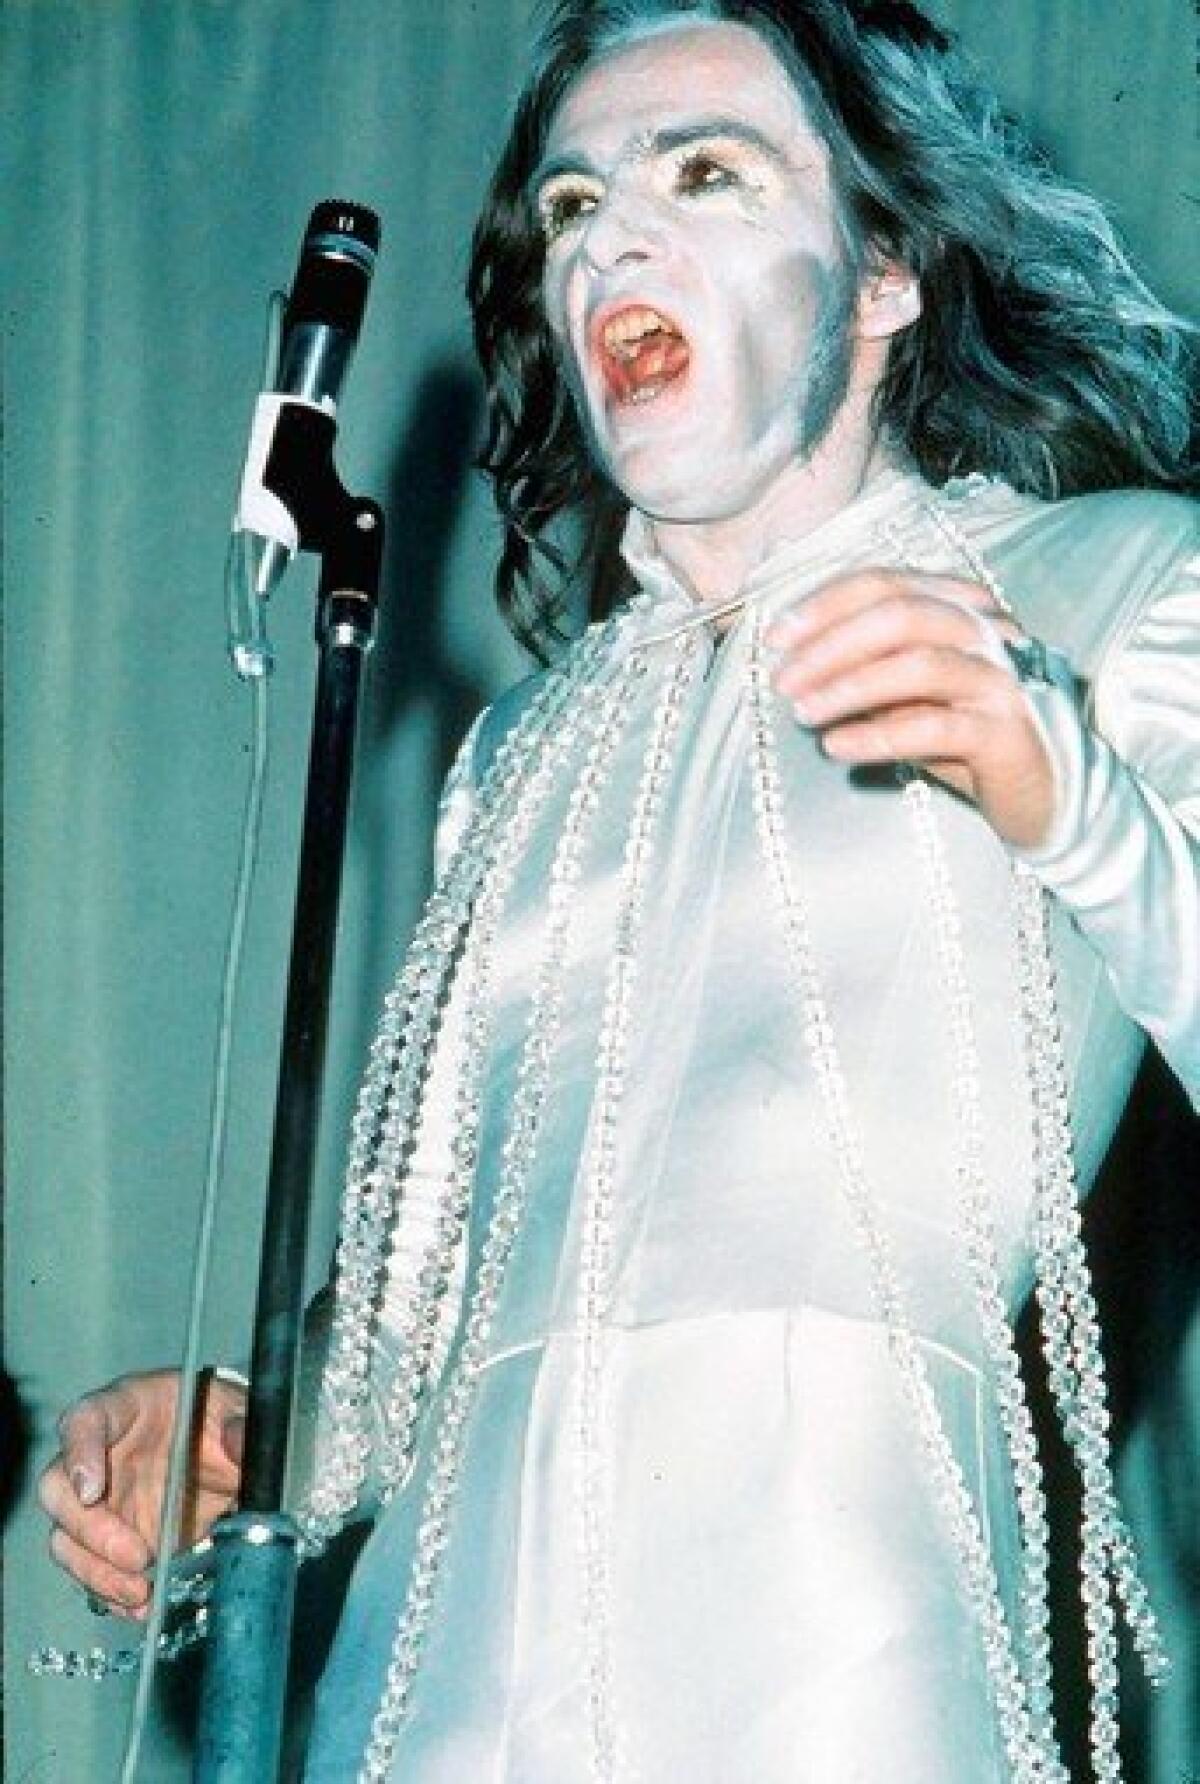 Peter Gabriel of Genesis performs in London in 1971.